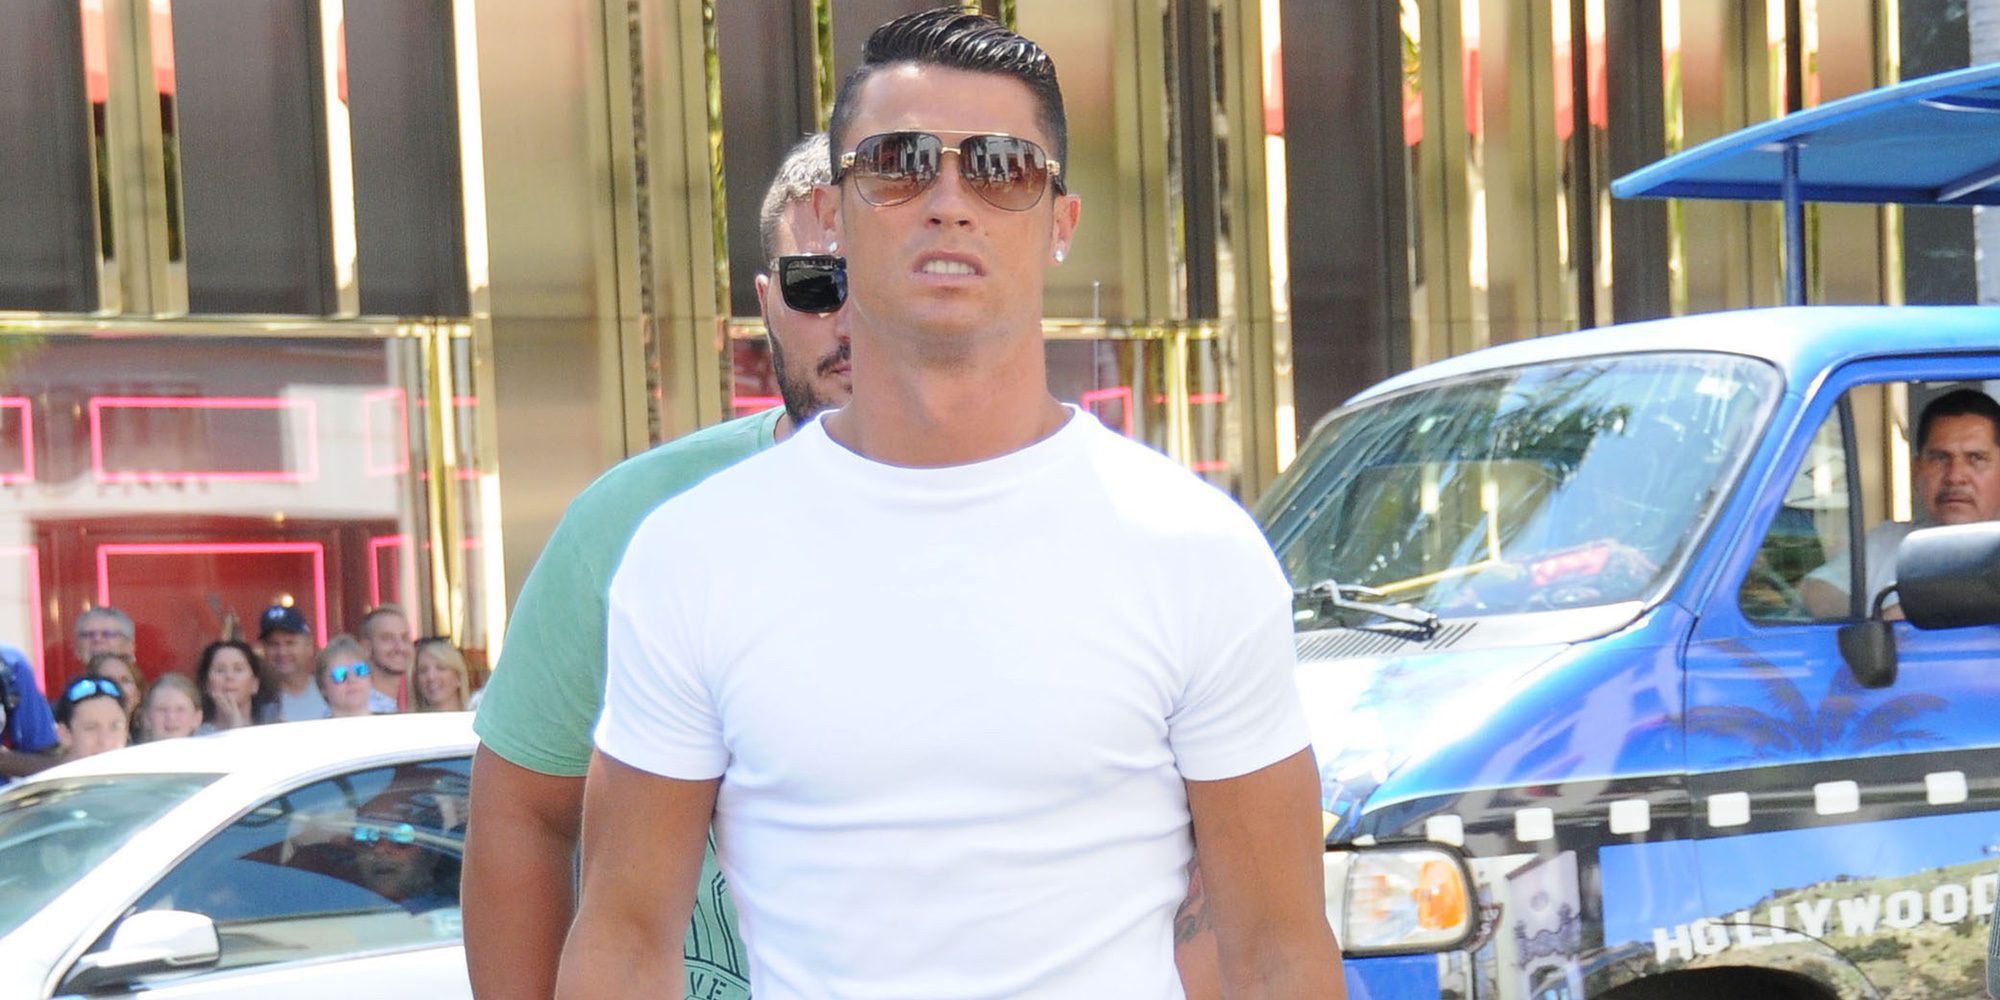 El nuevo busto de Cristiano Ronaldo que hace olvidar el desastre de Madeira